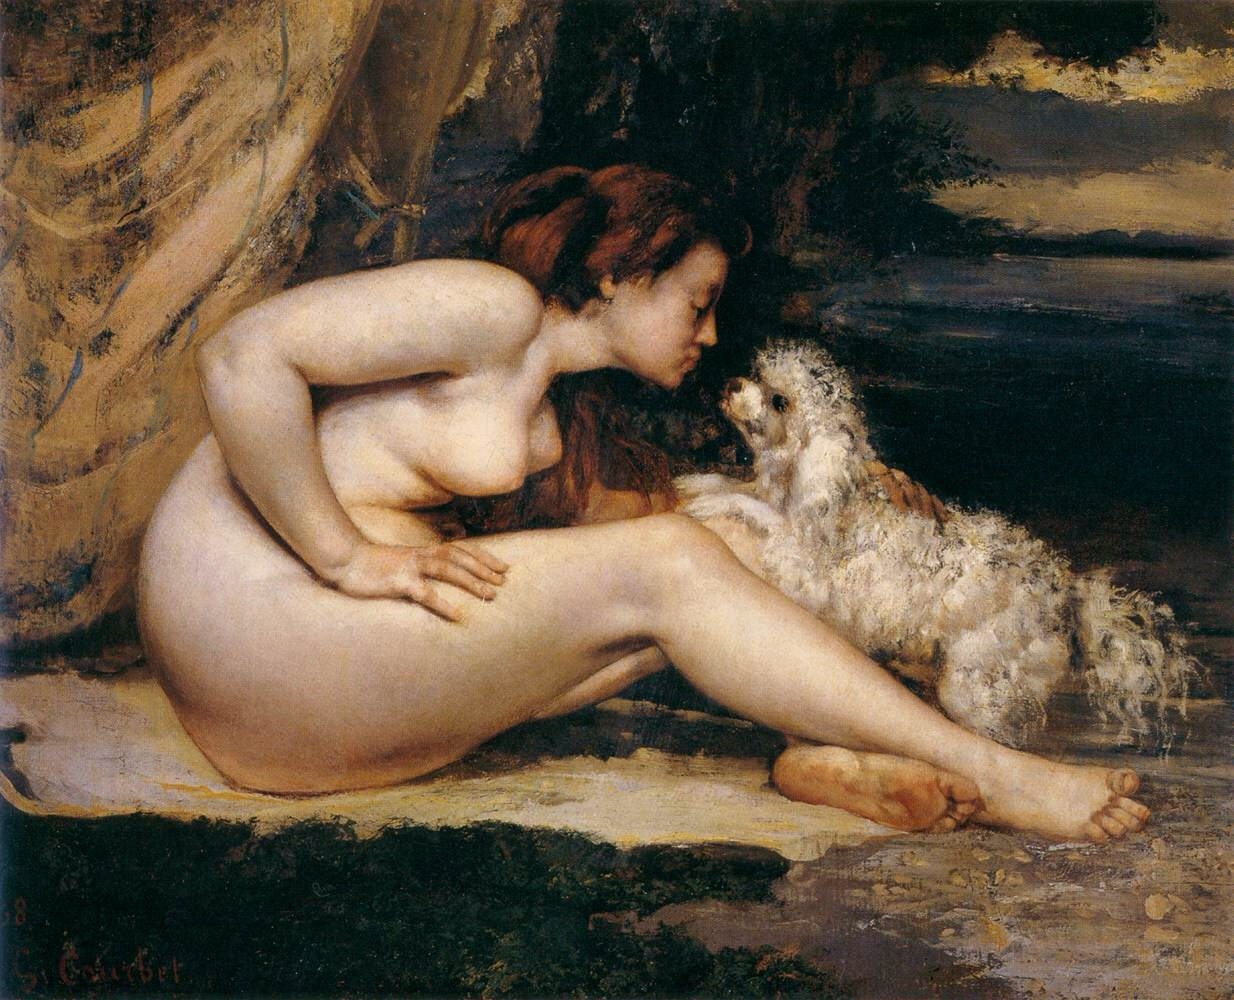 Fine art nude women